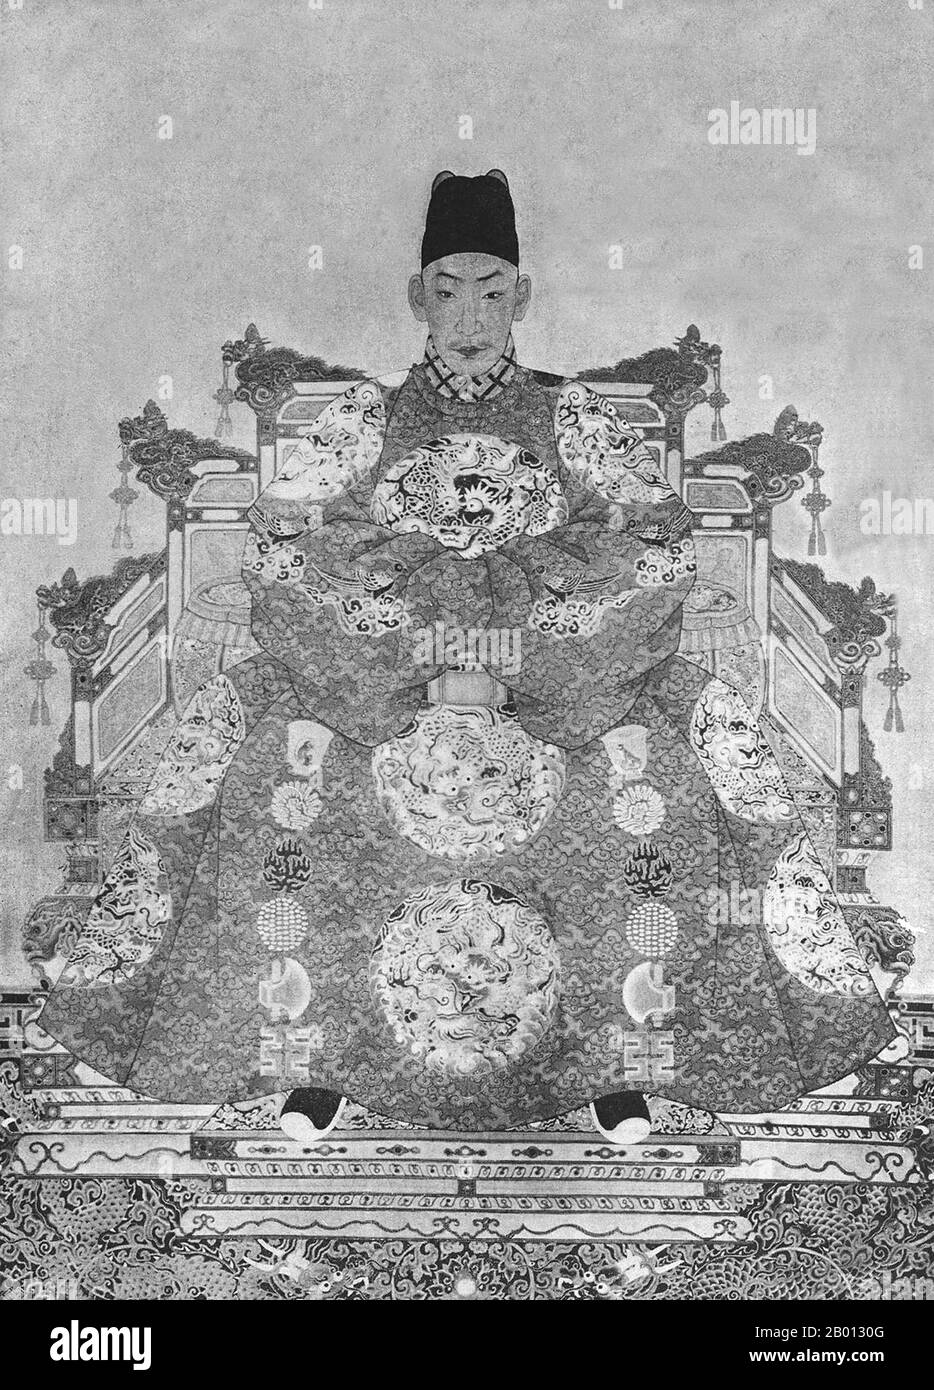 China: Kaiser Zhengde (27. Oktober 1491 - 20. April 1521), 11. Herrscher der Ming-Dynastie (r. 1505-1521). Hängende Schriftrolle, 16.-17. Jahrhundert. Der Kaiser Zhengde (1491-1521), der persönliche Name Zhu Houzhao und der Tempelname Wuzong, war der 11. Kaiser der Ming-Dynastie. Sein Zeitname bedeutet „Berichtigung der Tugend“. Zhengde vernachlässigte seine kaiserlichen Pflichten gründlich und begann einen gefährlichen Trend, der zukünftige Ming-Kaiser plagen würde. Das Aufgeben der offiziellen Pflichten für persönliche Freuden würde langsam zum Aufstieg mächtiger Eunuchen führen, die zum Fall der Ming-Dynastie führten. Stockfoto